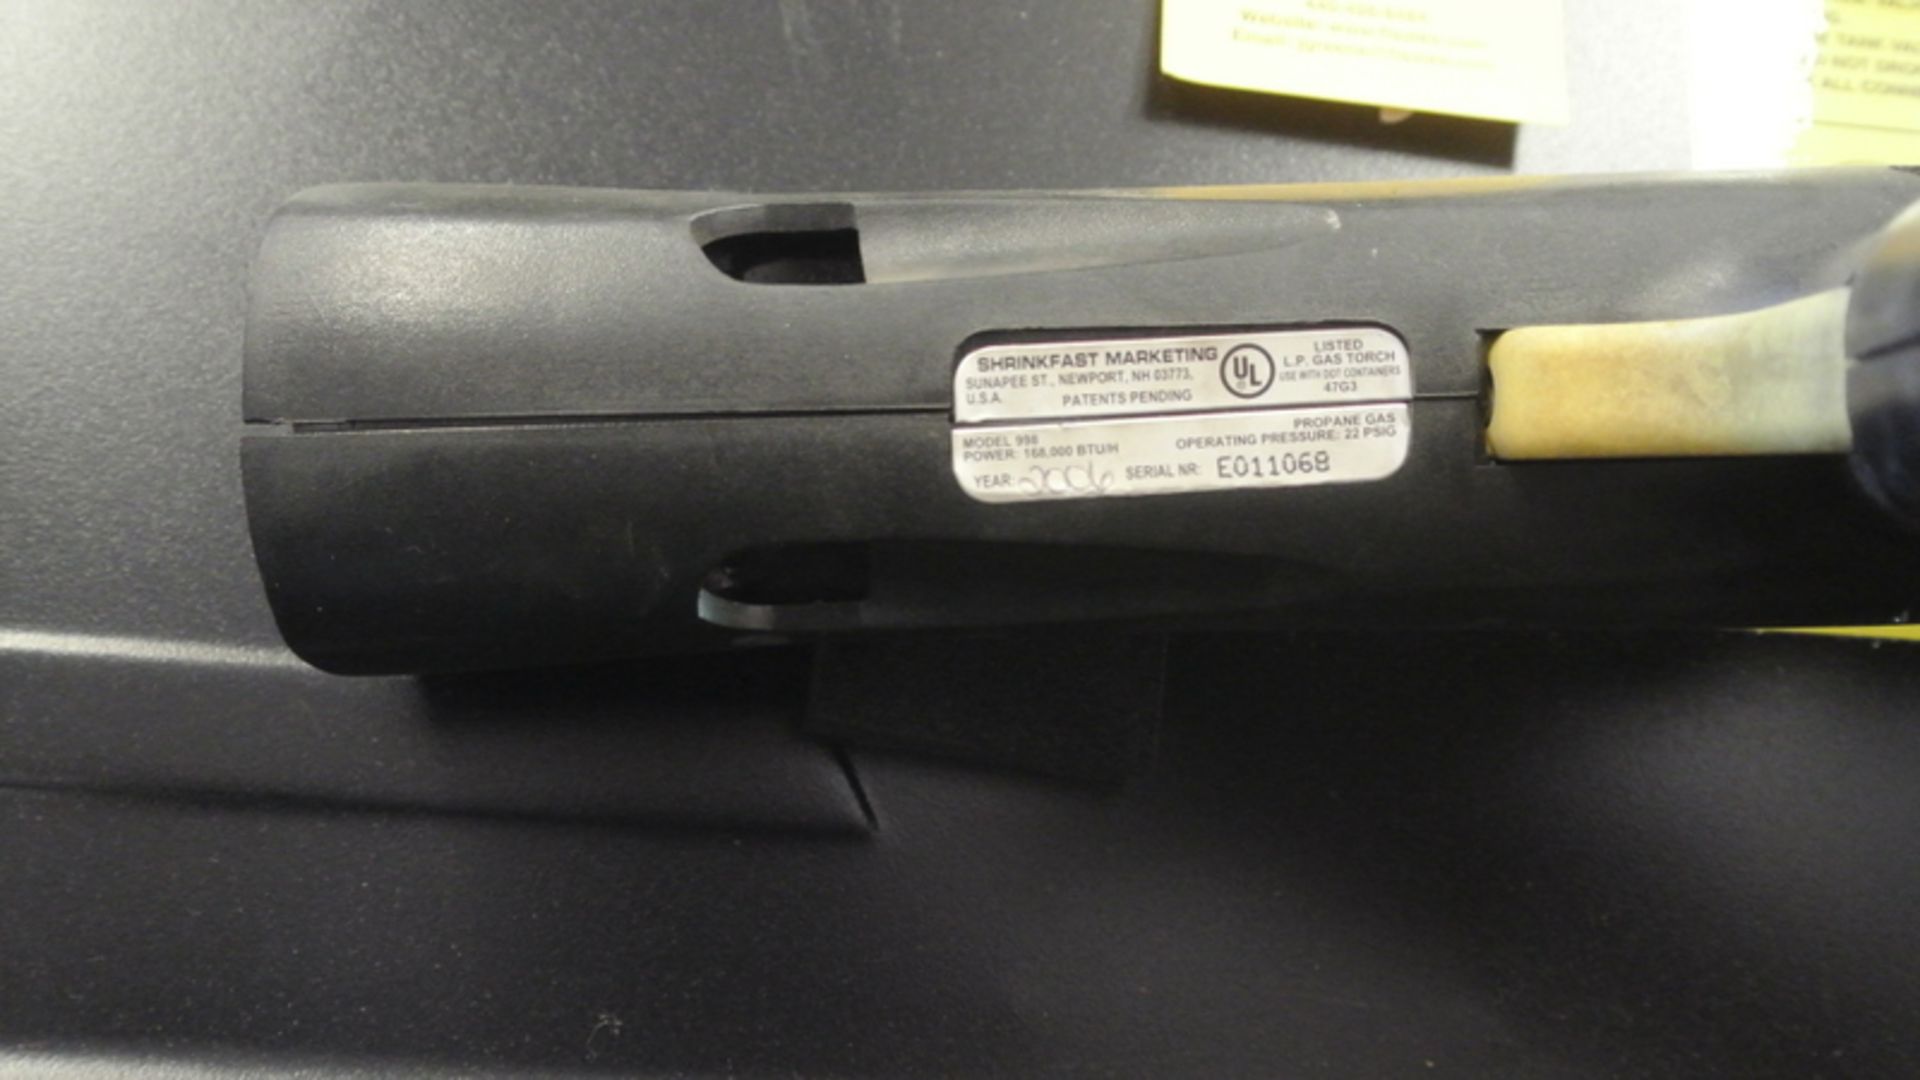 ULINE SHRINKFAST SHRINK WRAP HEAT GUN MODEL 2006 LPG 998, S/N E011068 - Image 3 of 3